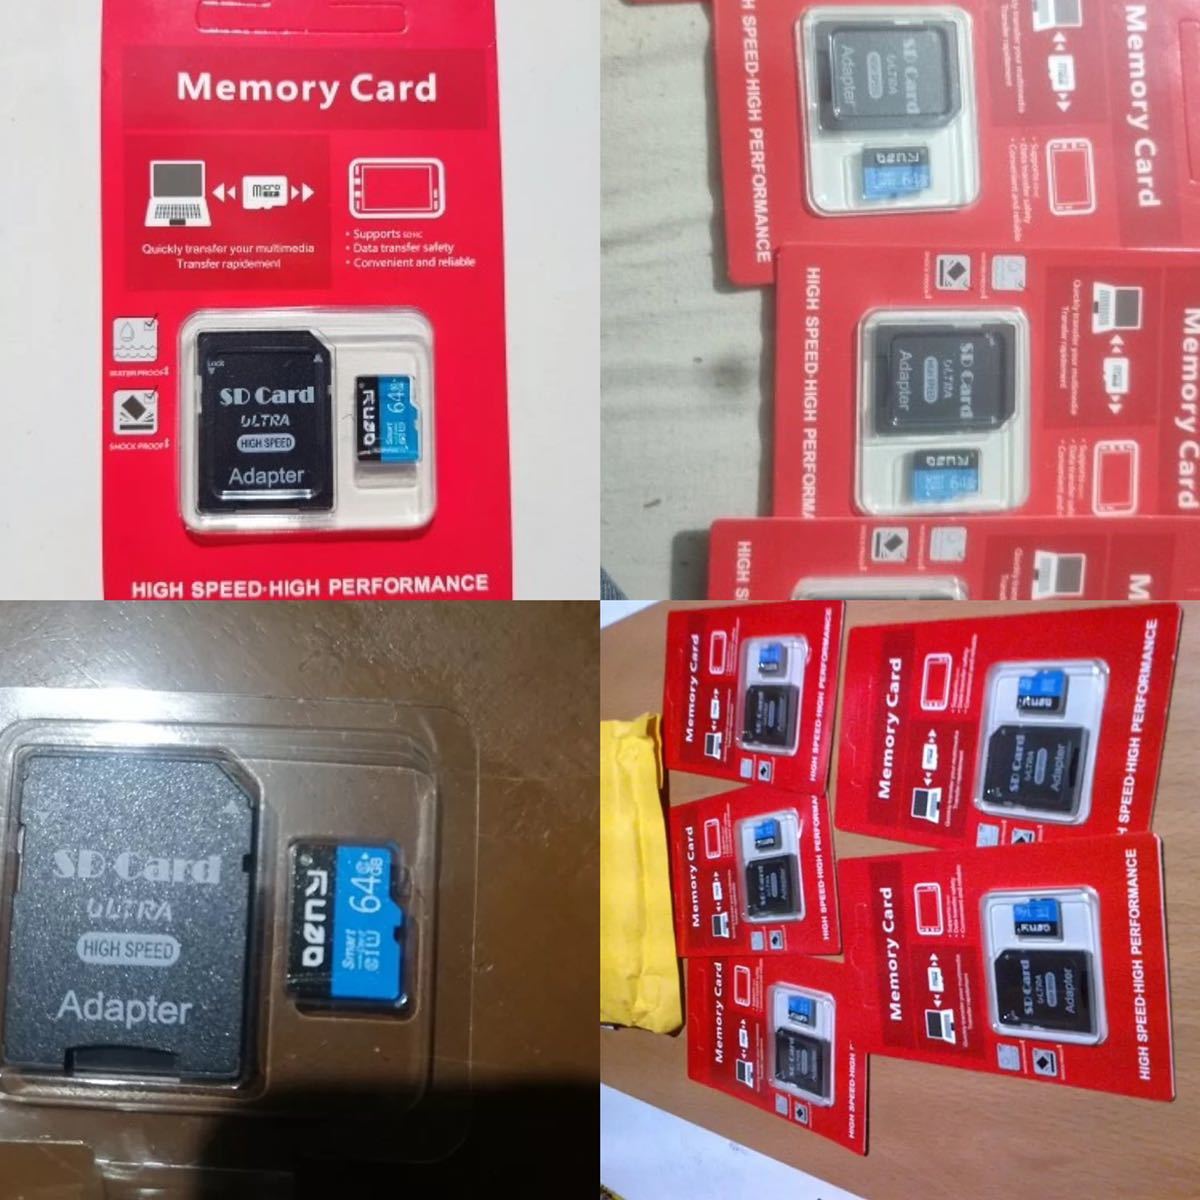 A-30[1 иен старт * новый товар * не использовался ] микро SD карта памяти Class 10 flash карта 256GB большая вместимость быстрое решение есть 